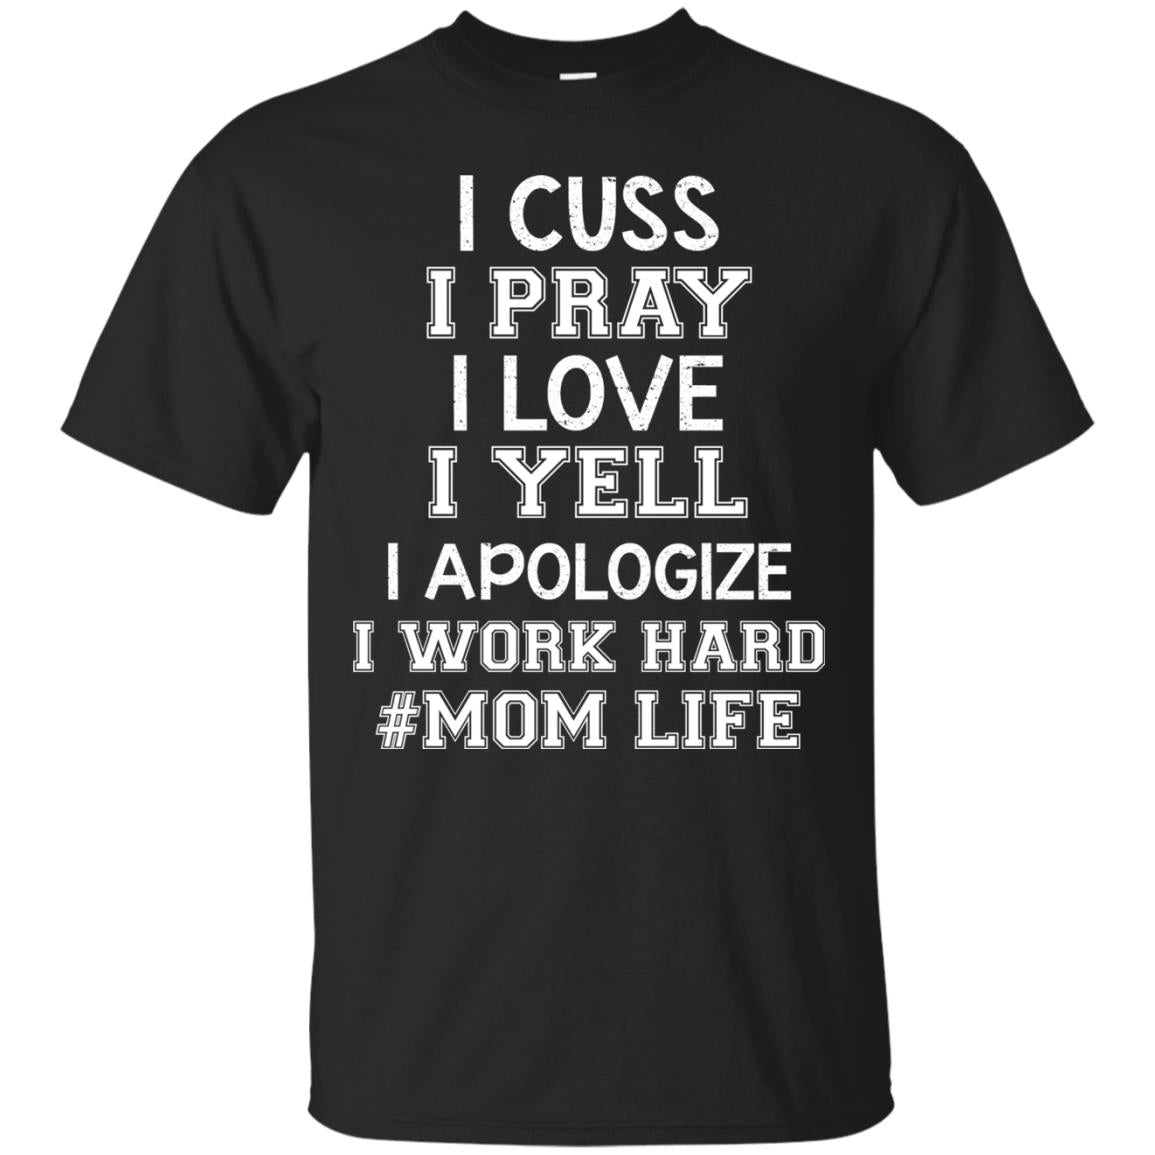 I Cuss I Pray I Love I Yell I Apologize I Work Hard Mom Life ShirtG200 Gildan Ultra Cotton T-Shirt